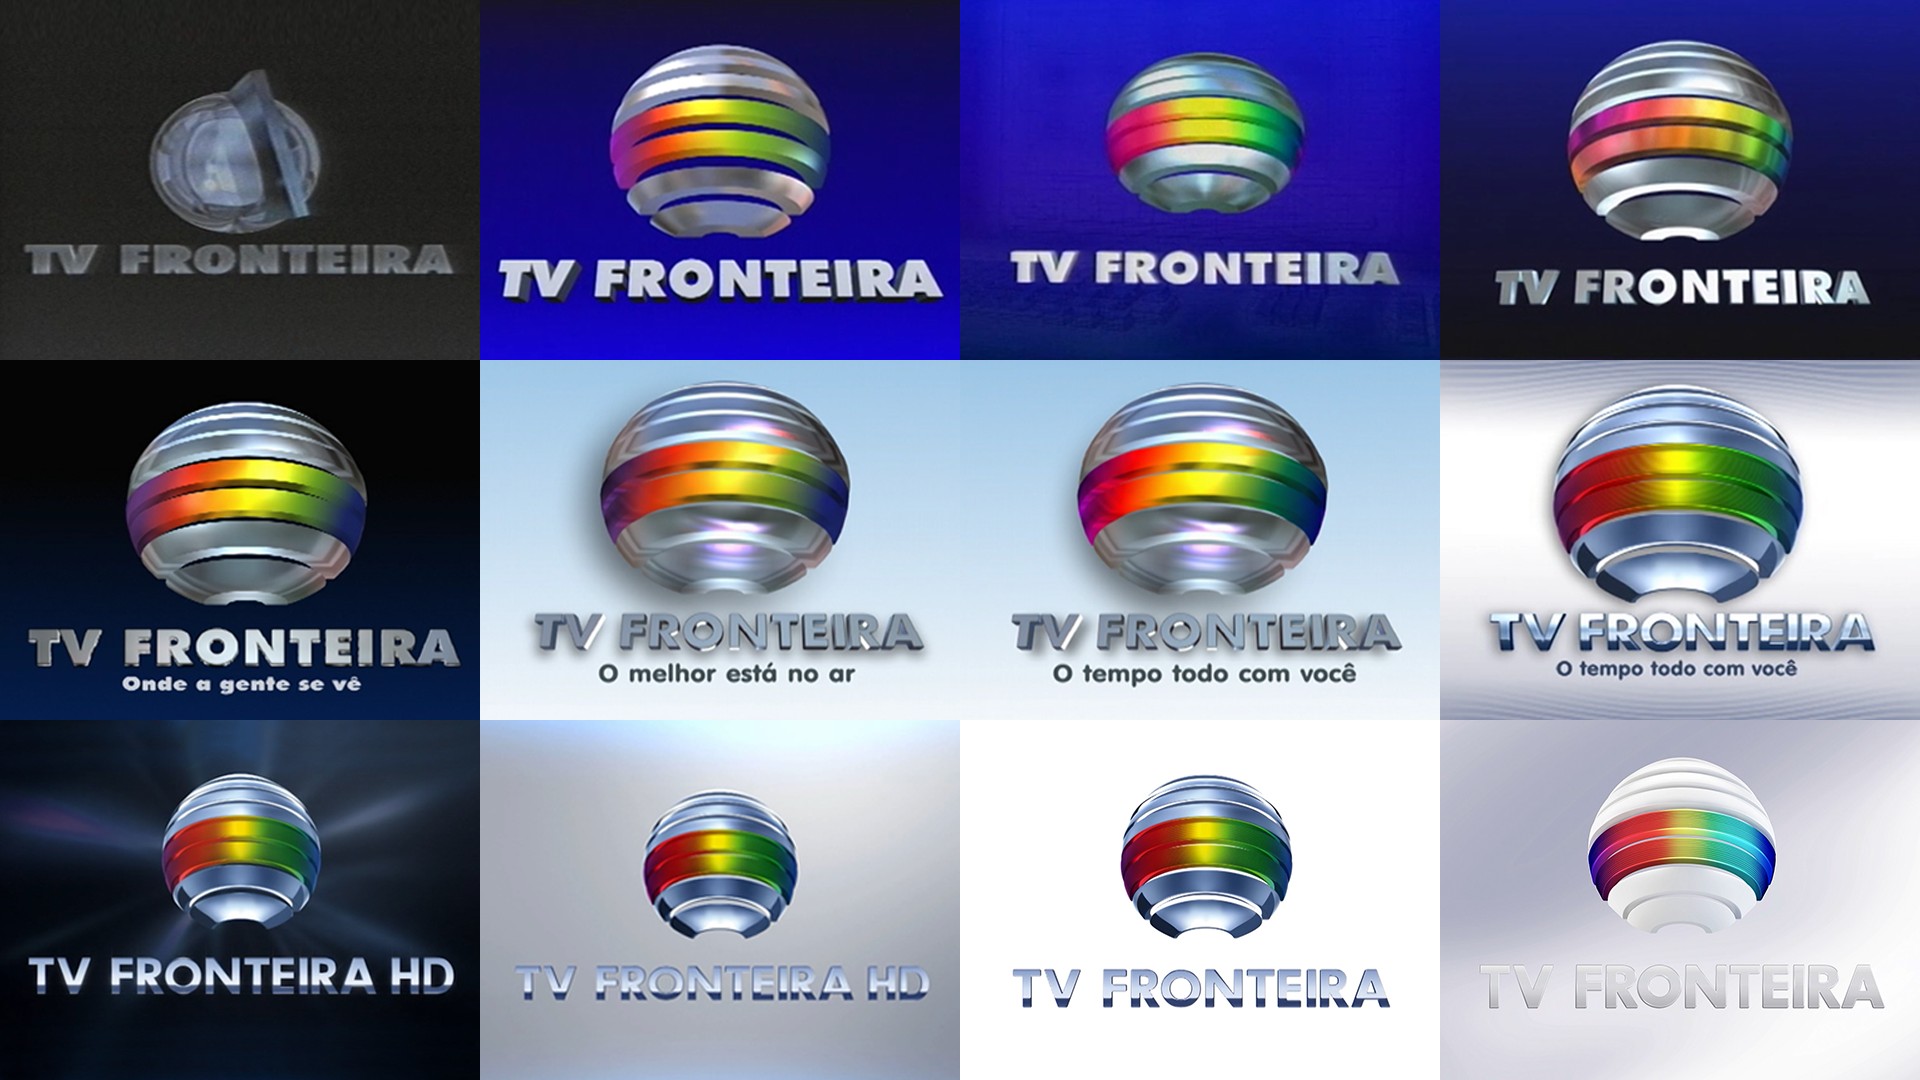 De sonho a emissora multimídia: conheça a história por trás da criação da TV Fronteira há 30 anos